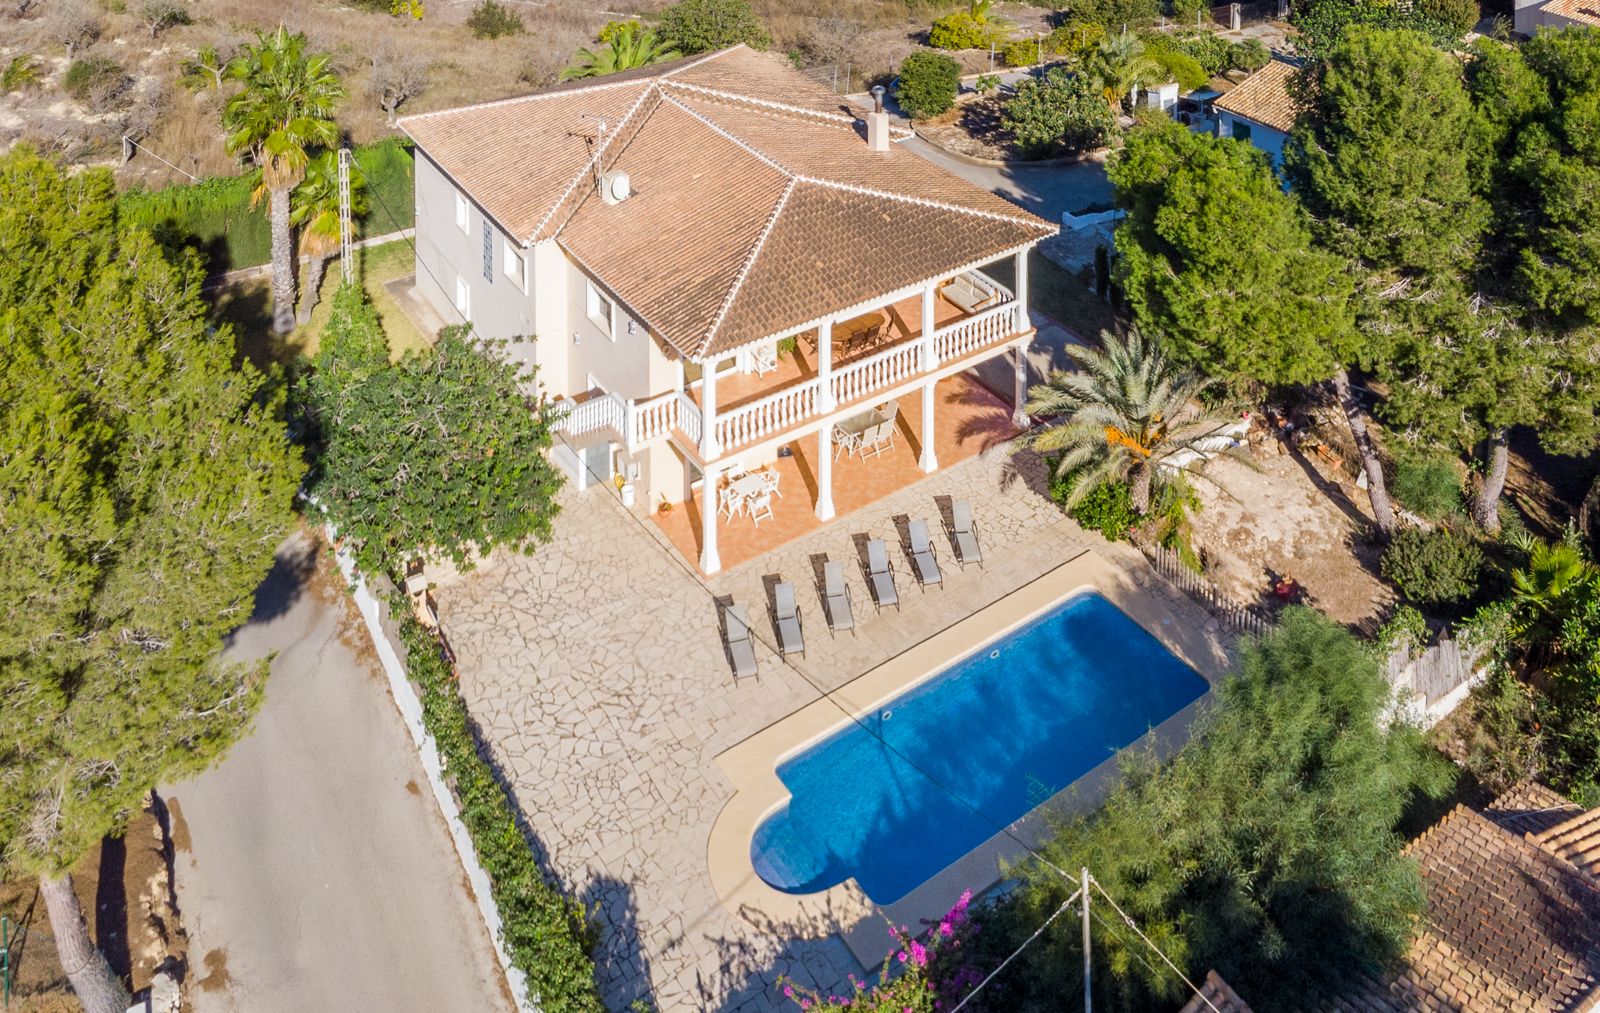 Villa de estilo mediterráneo a la venta en Moraira